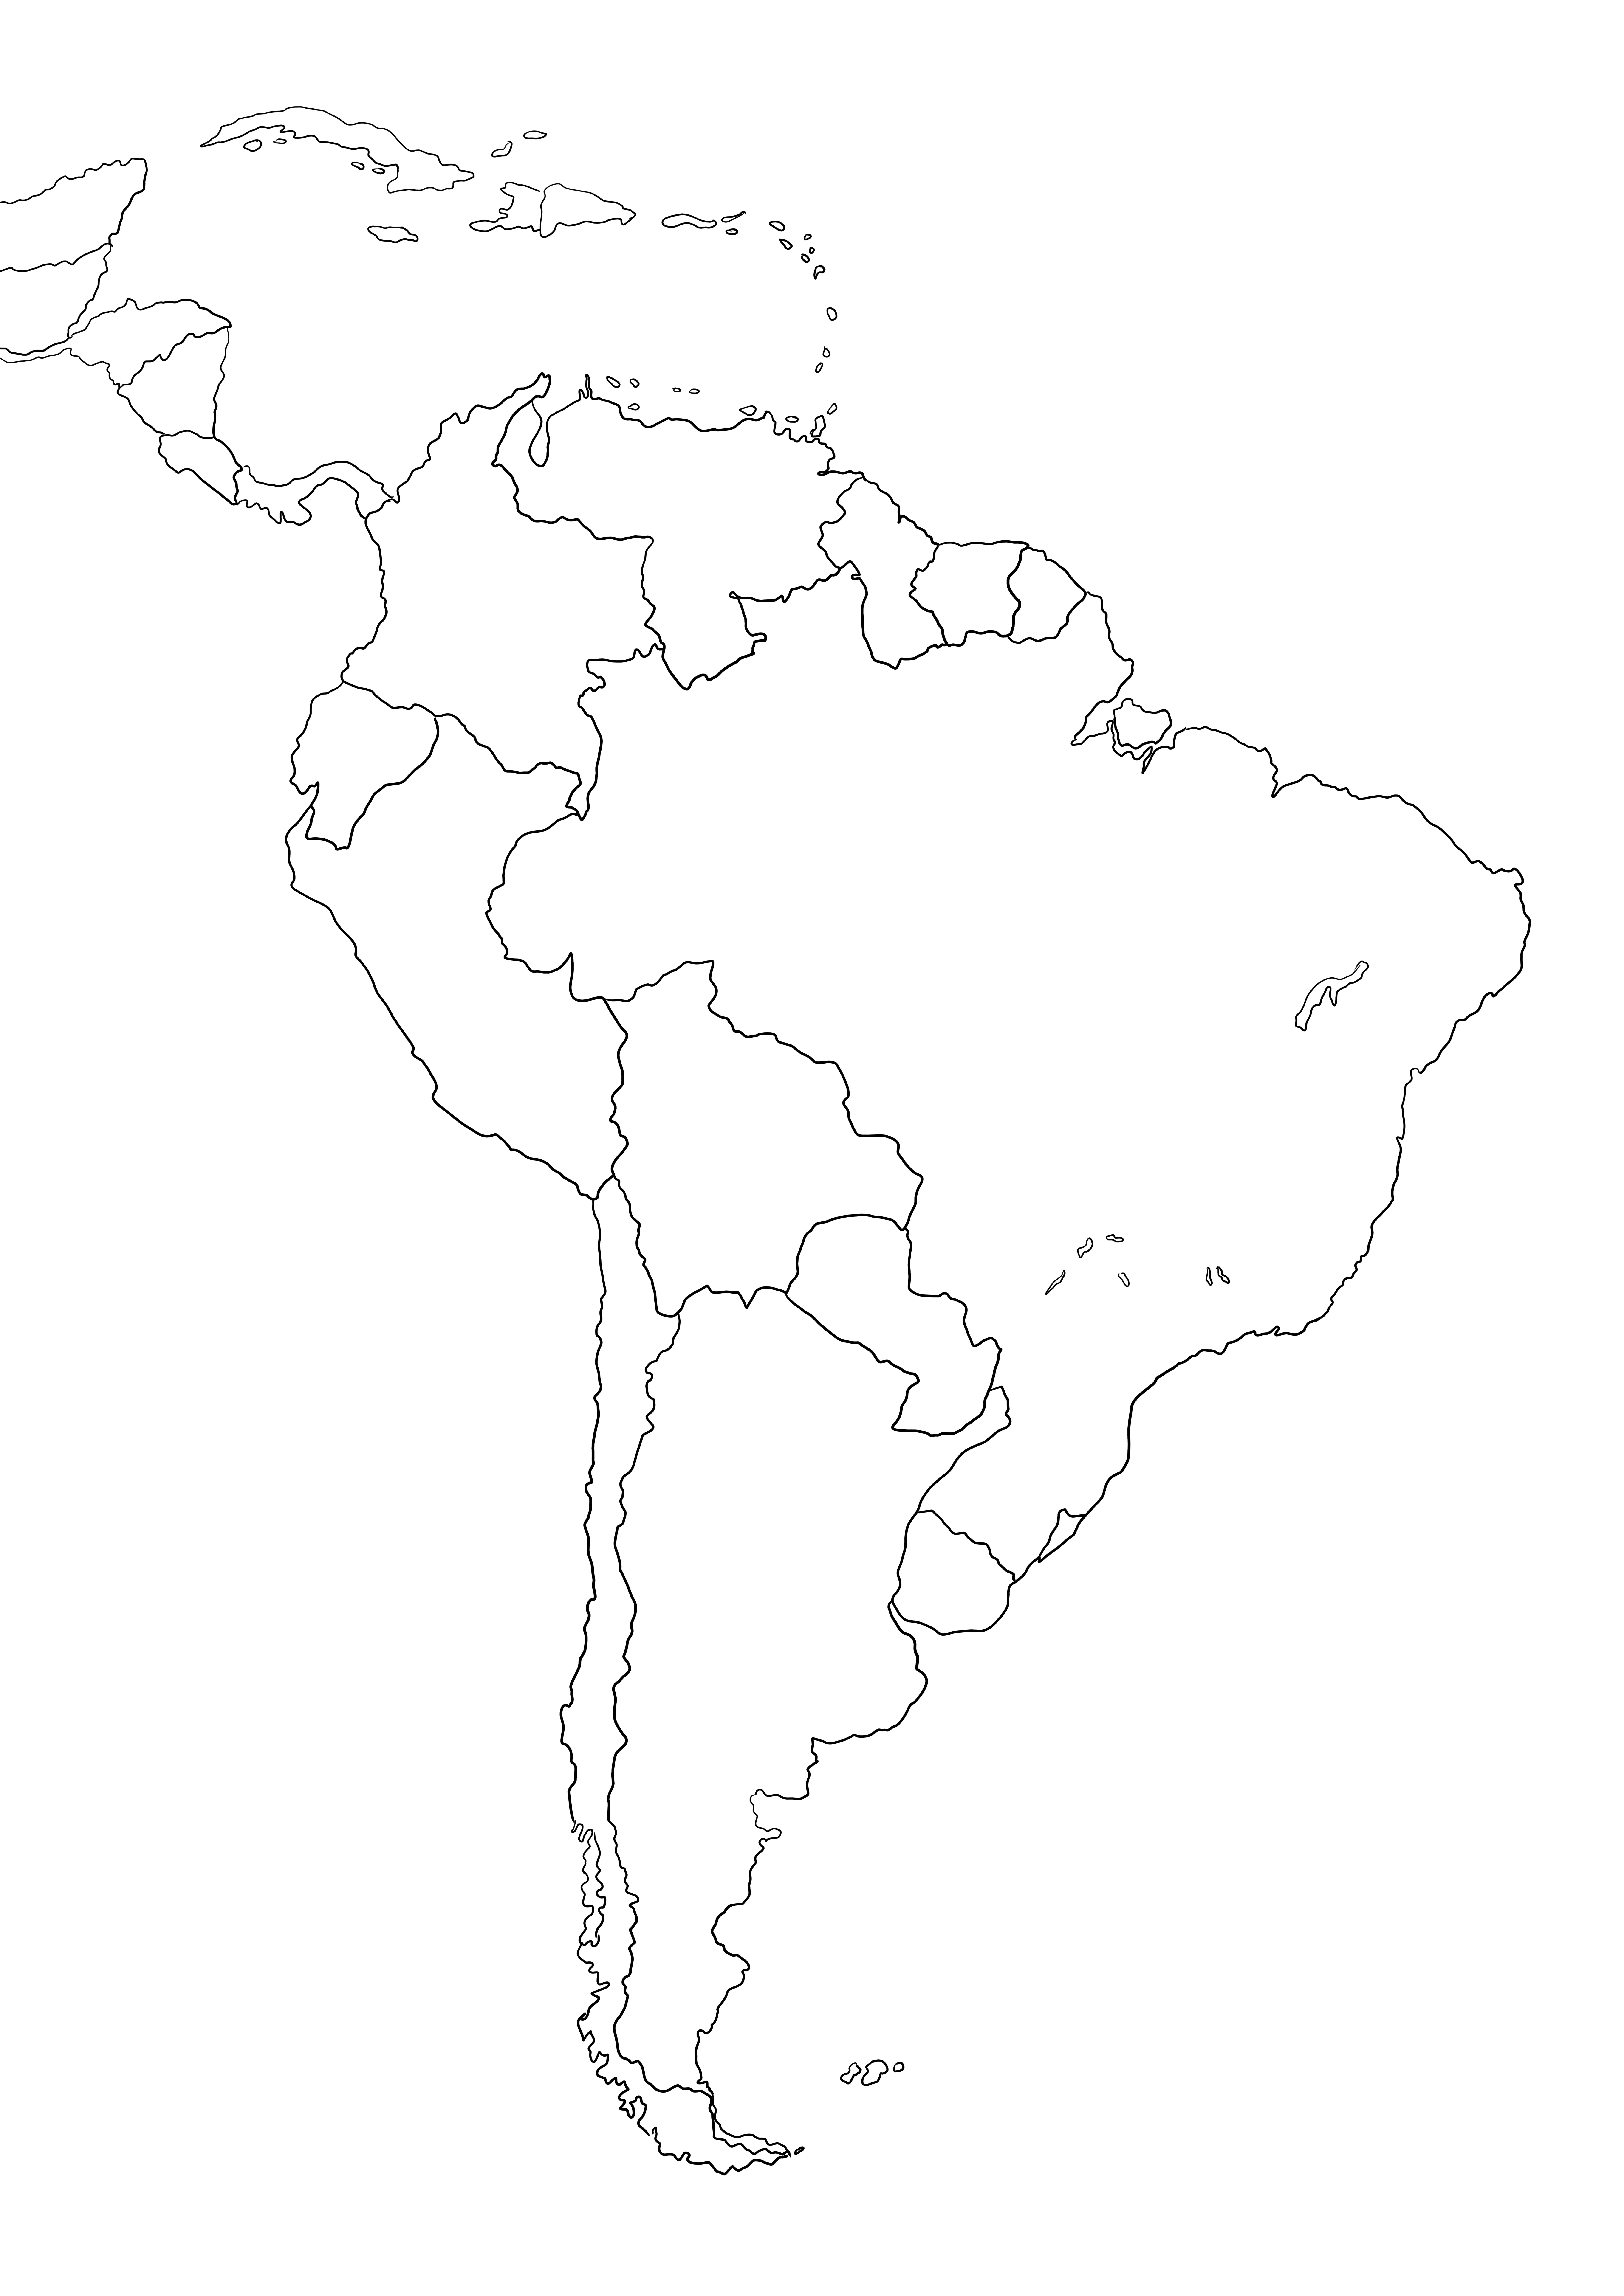 Darmowa mapa Ameryki Południowej do pokolorowania lub zapisania na później